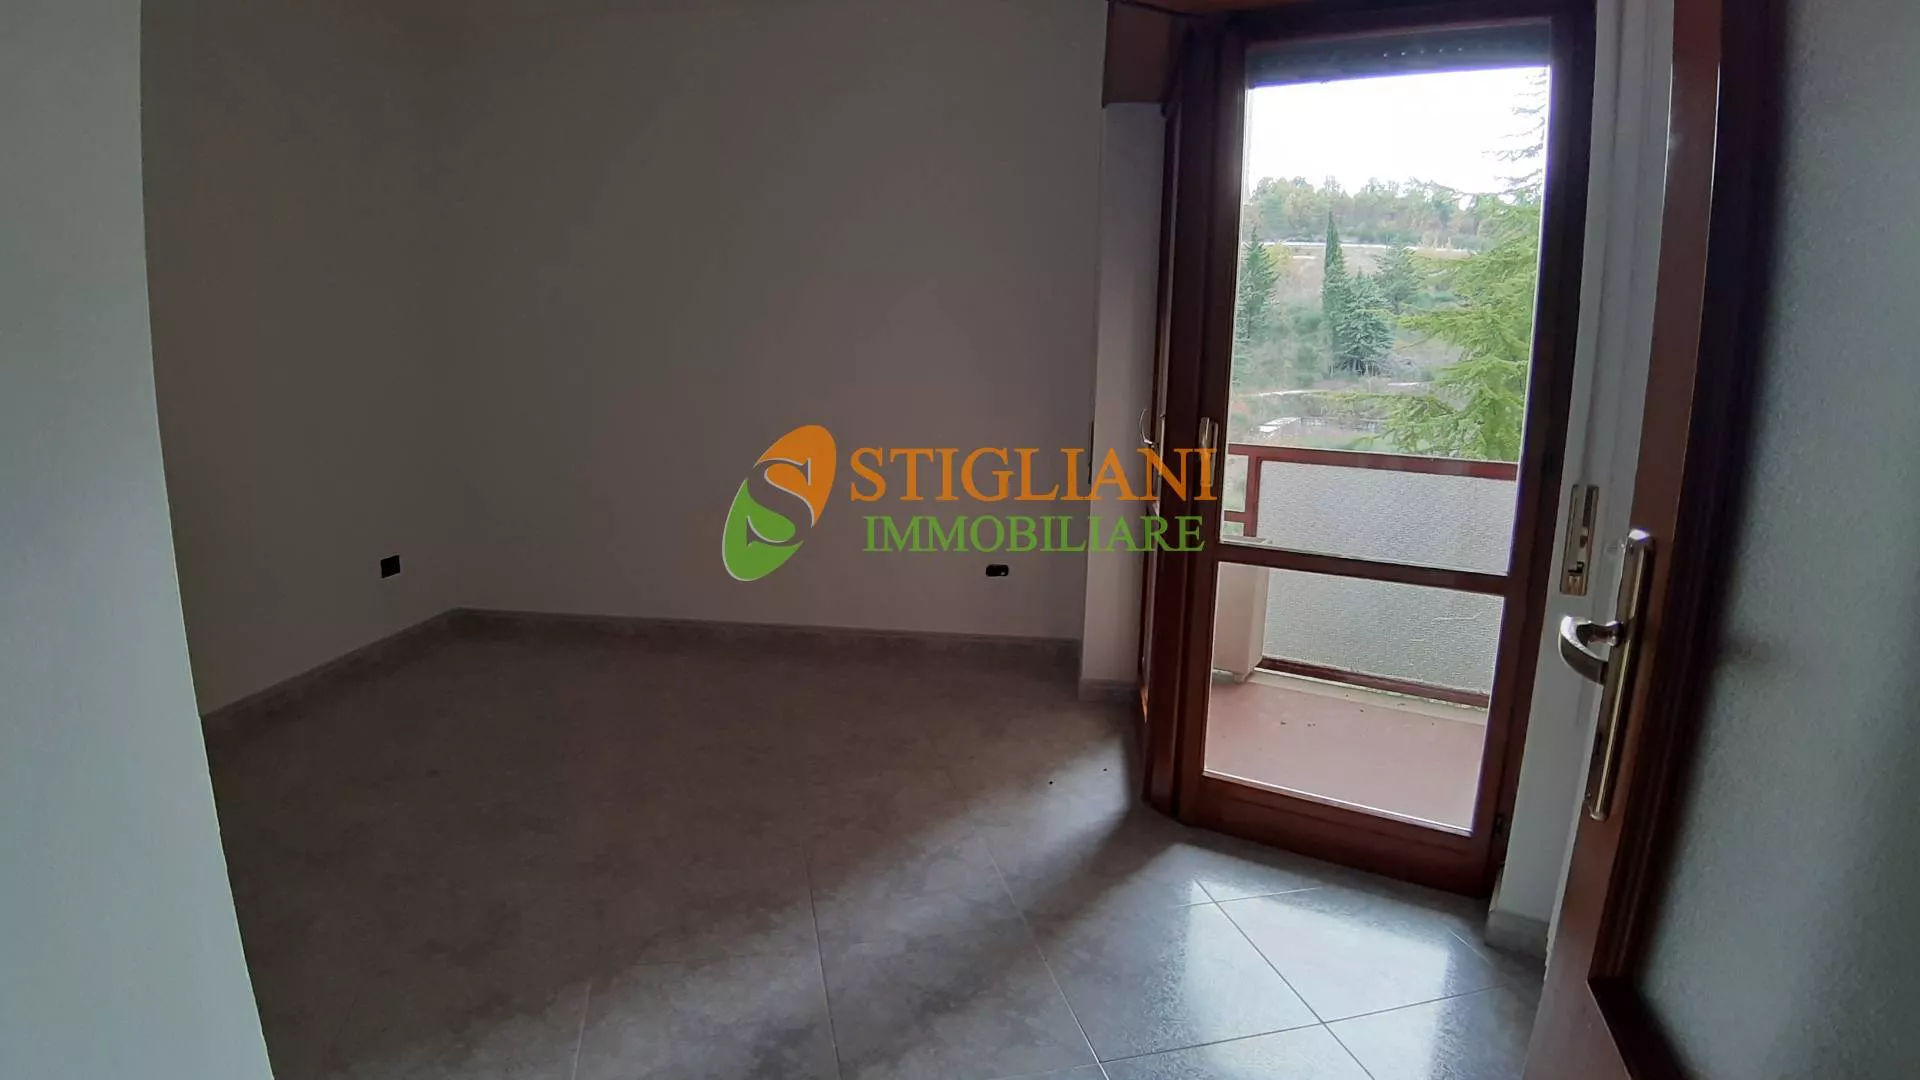 Immagine per Appartamento in vendita a Campobasso Zona Conte Rosso